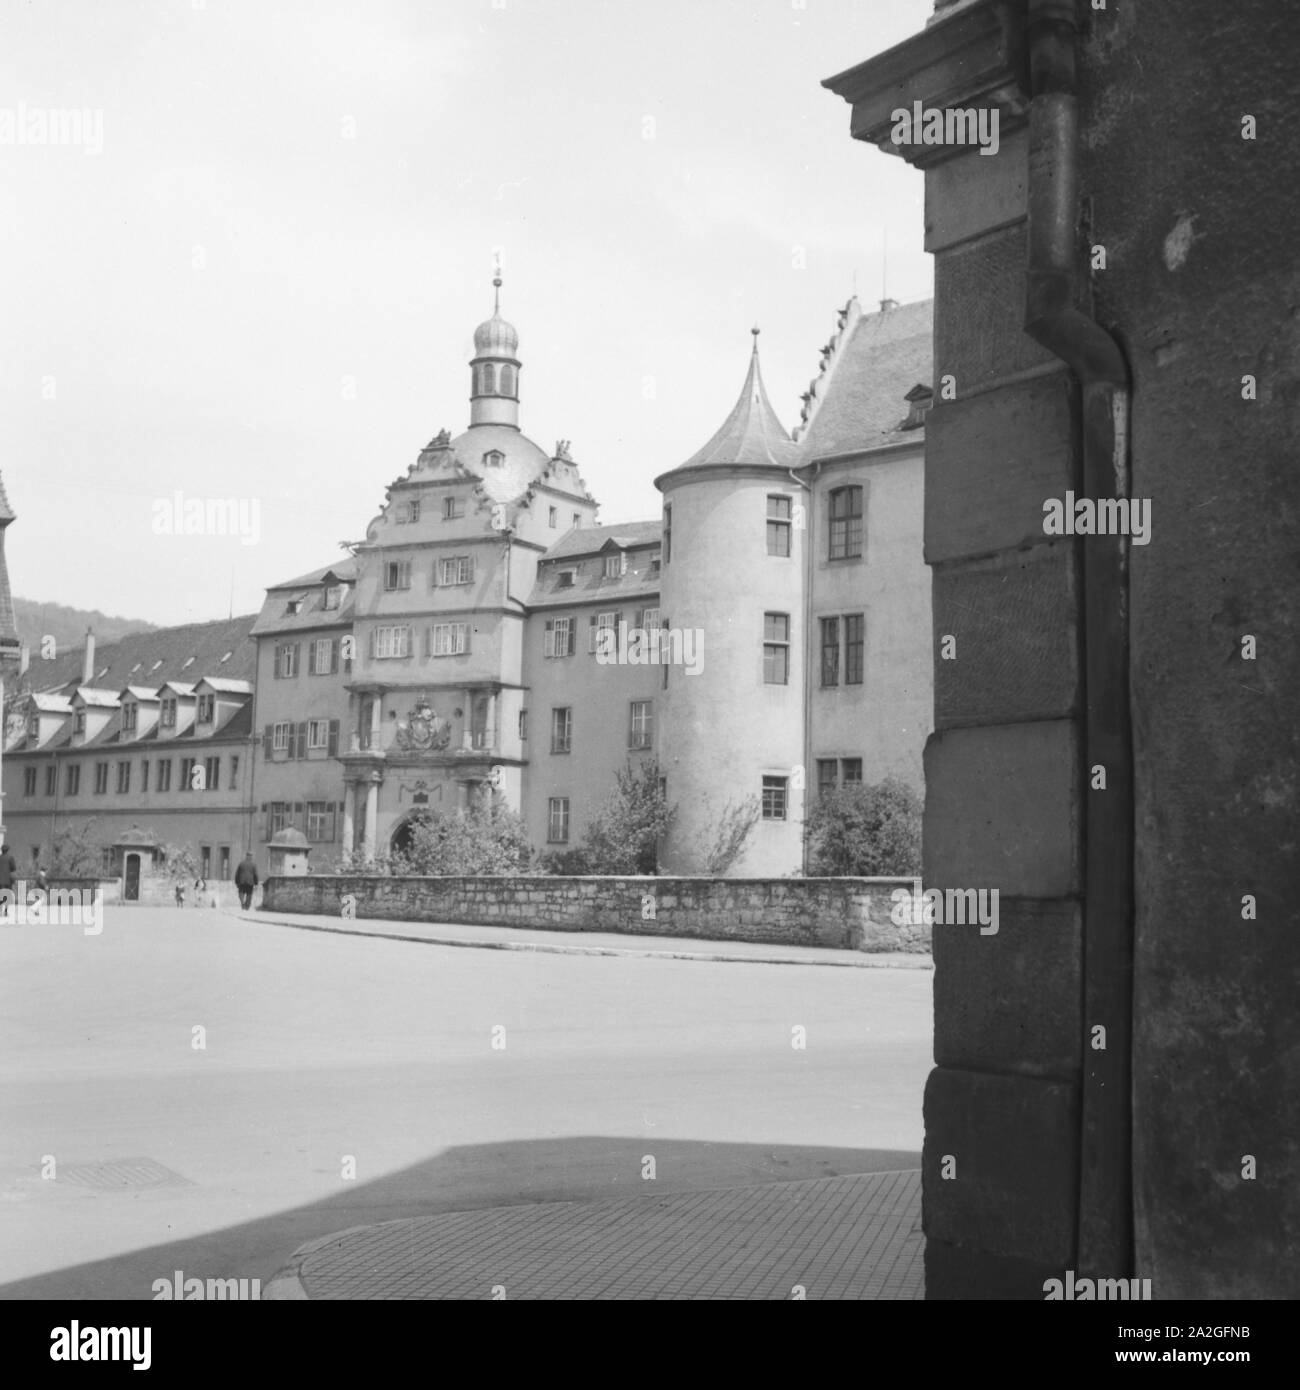 Gebäude in einer Altstadt, Deutschland 1930er Jahre. Bâtiments dans une vieille ville, Allemagne 1930. Banque D'Images